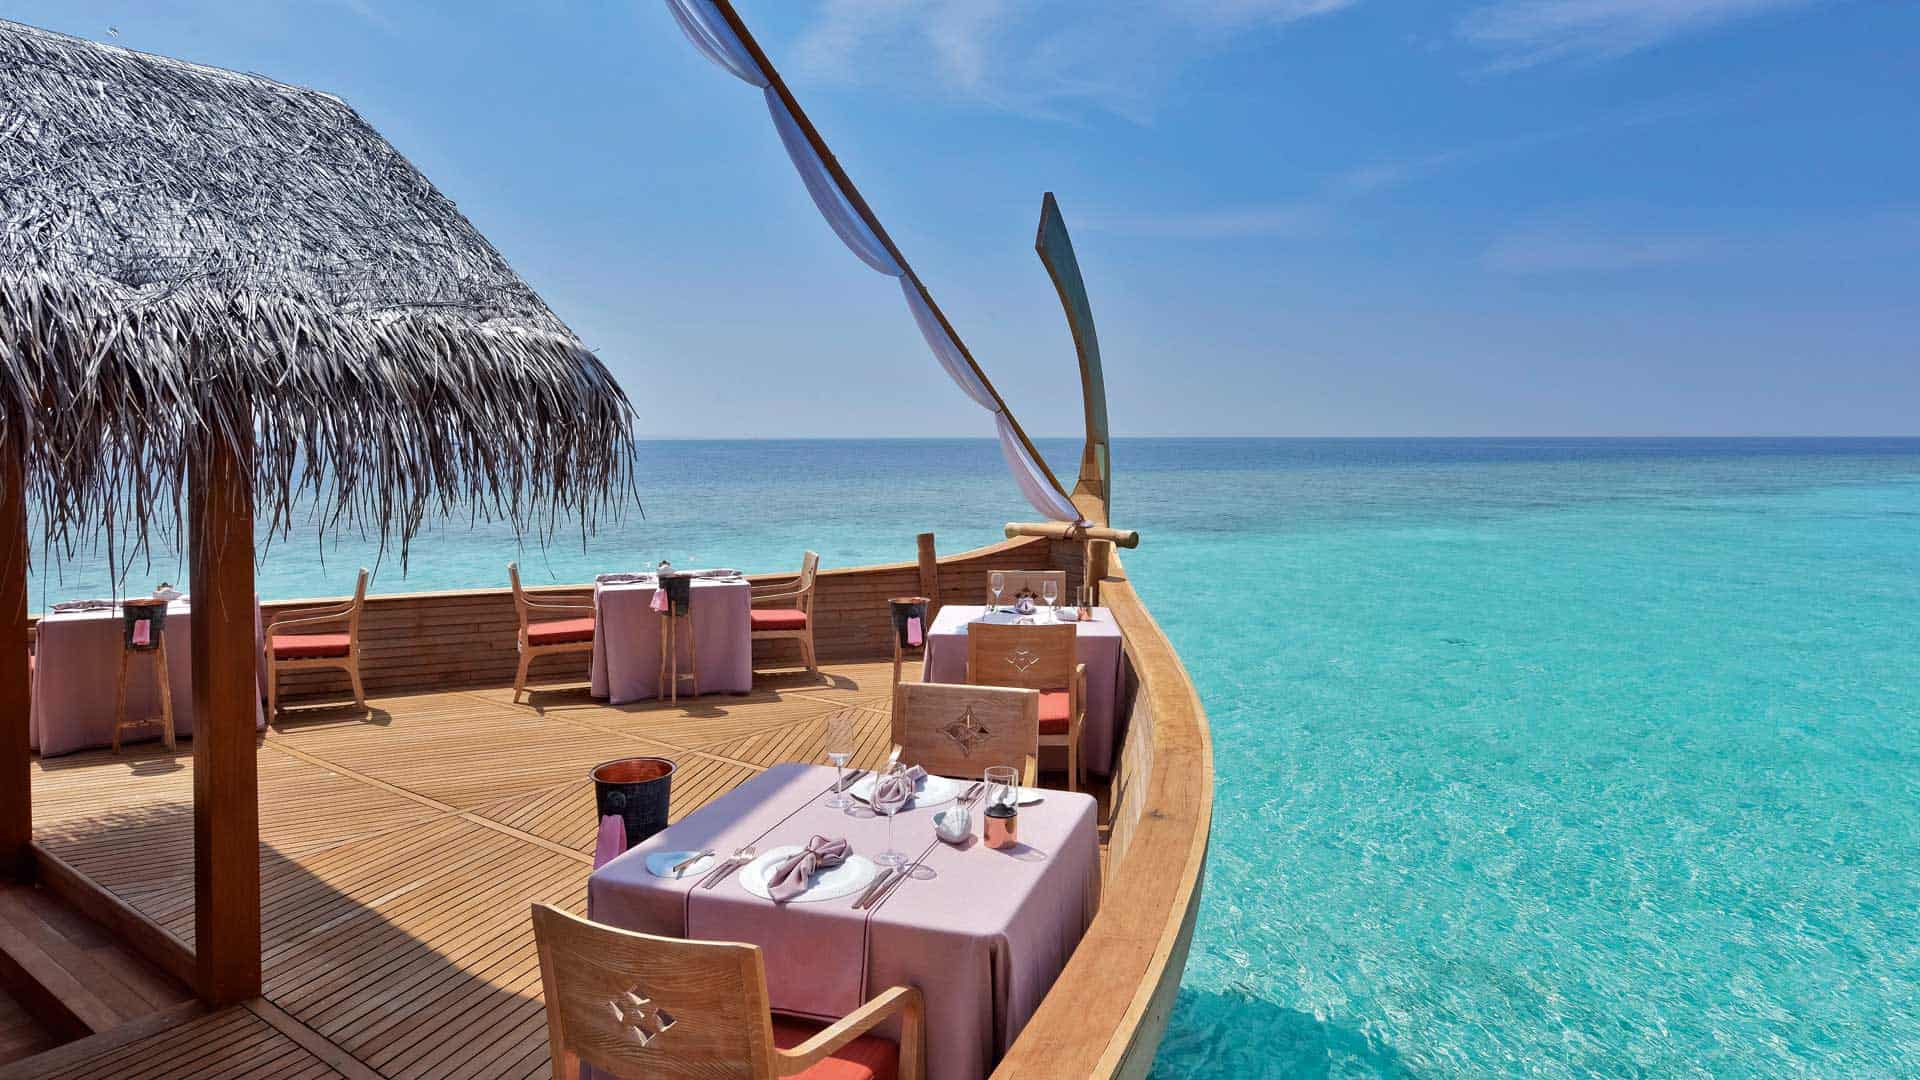 Gedeckte Tische auf einem hölzernen Boot, blaues Meer der Malediven